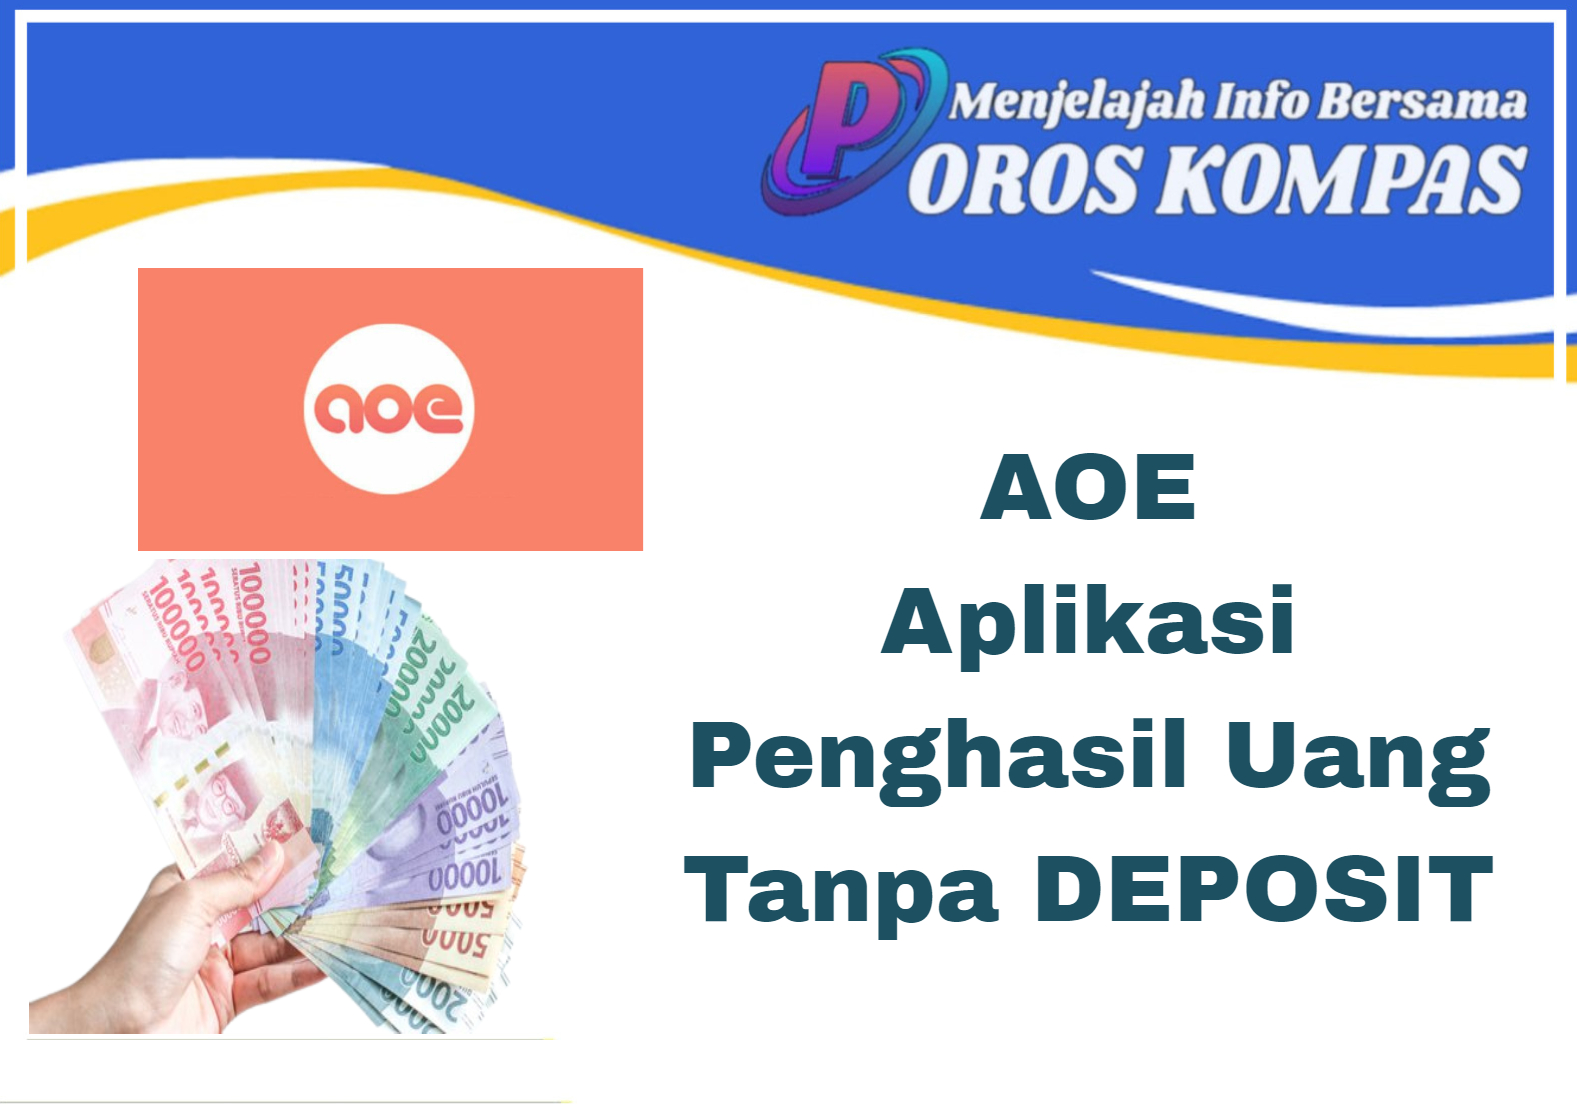 AOE : Aplikasi Penghasil Uang Tanpa Deposit